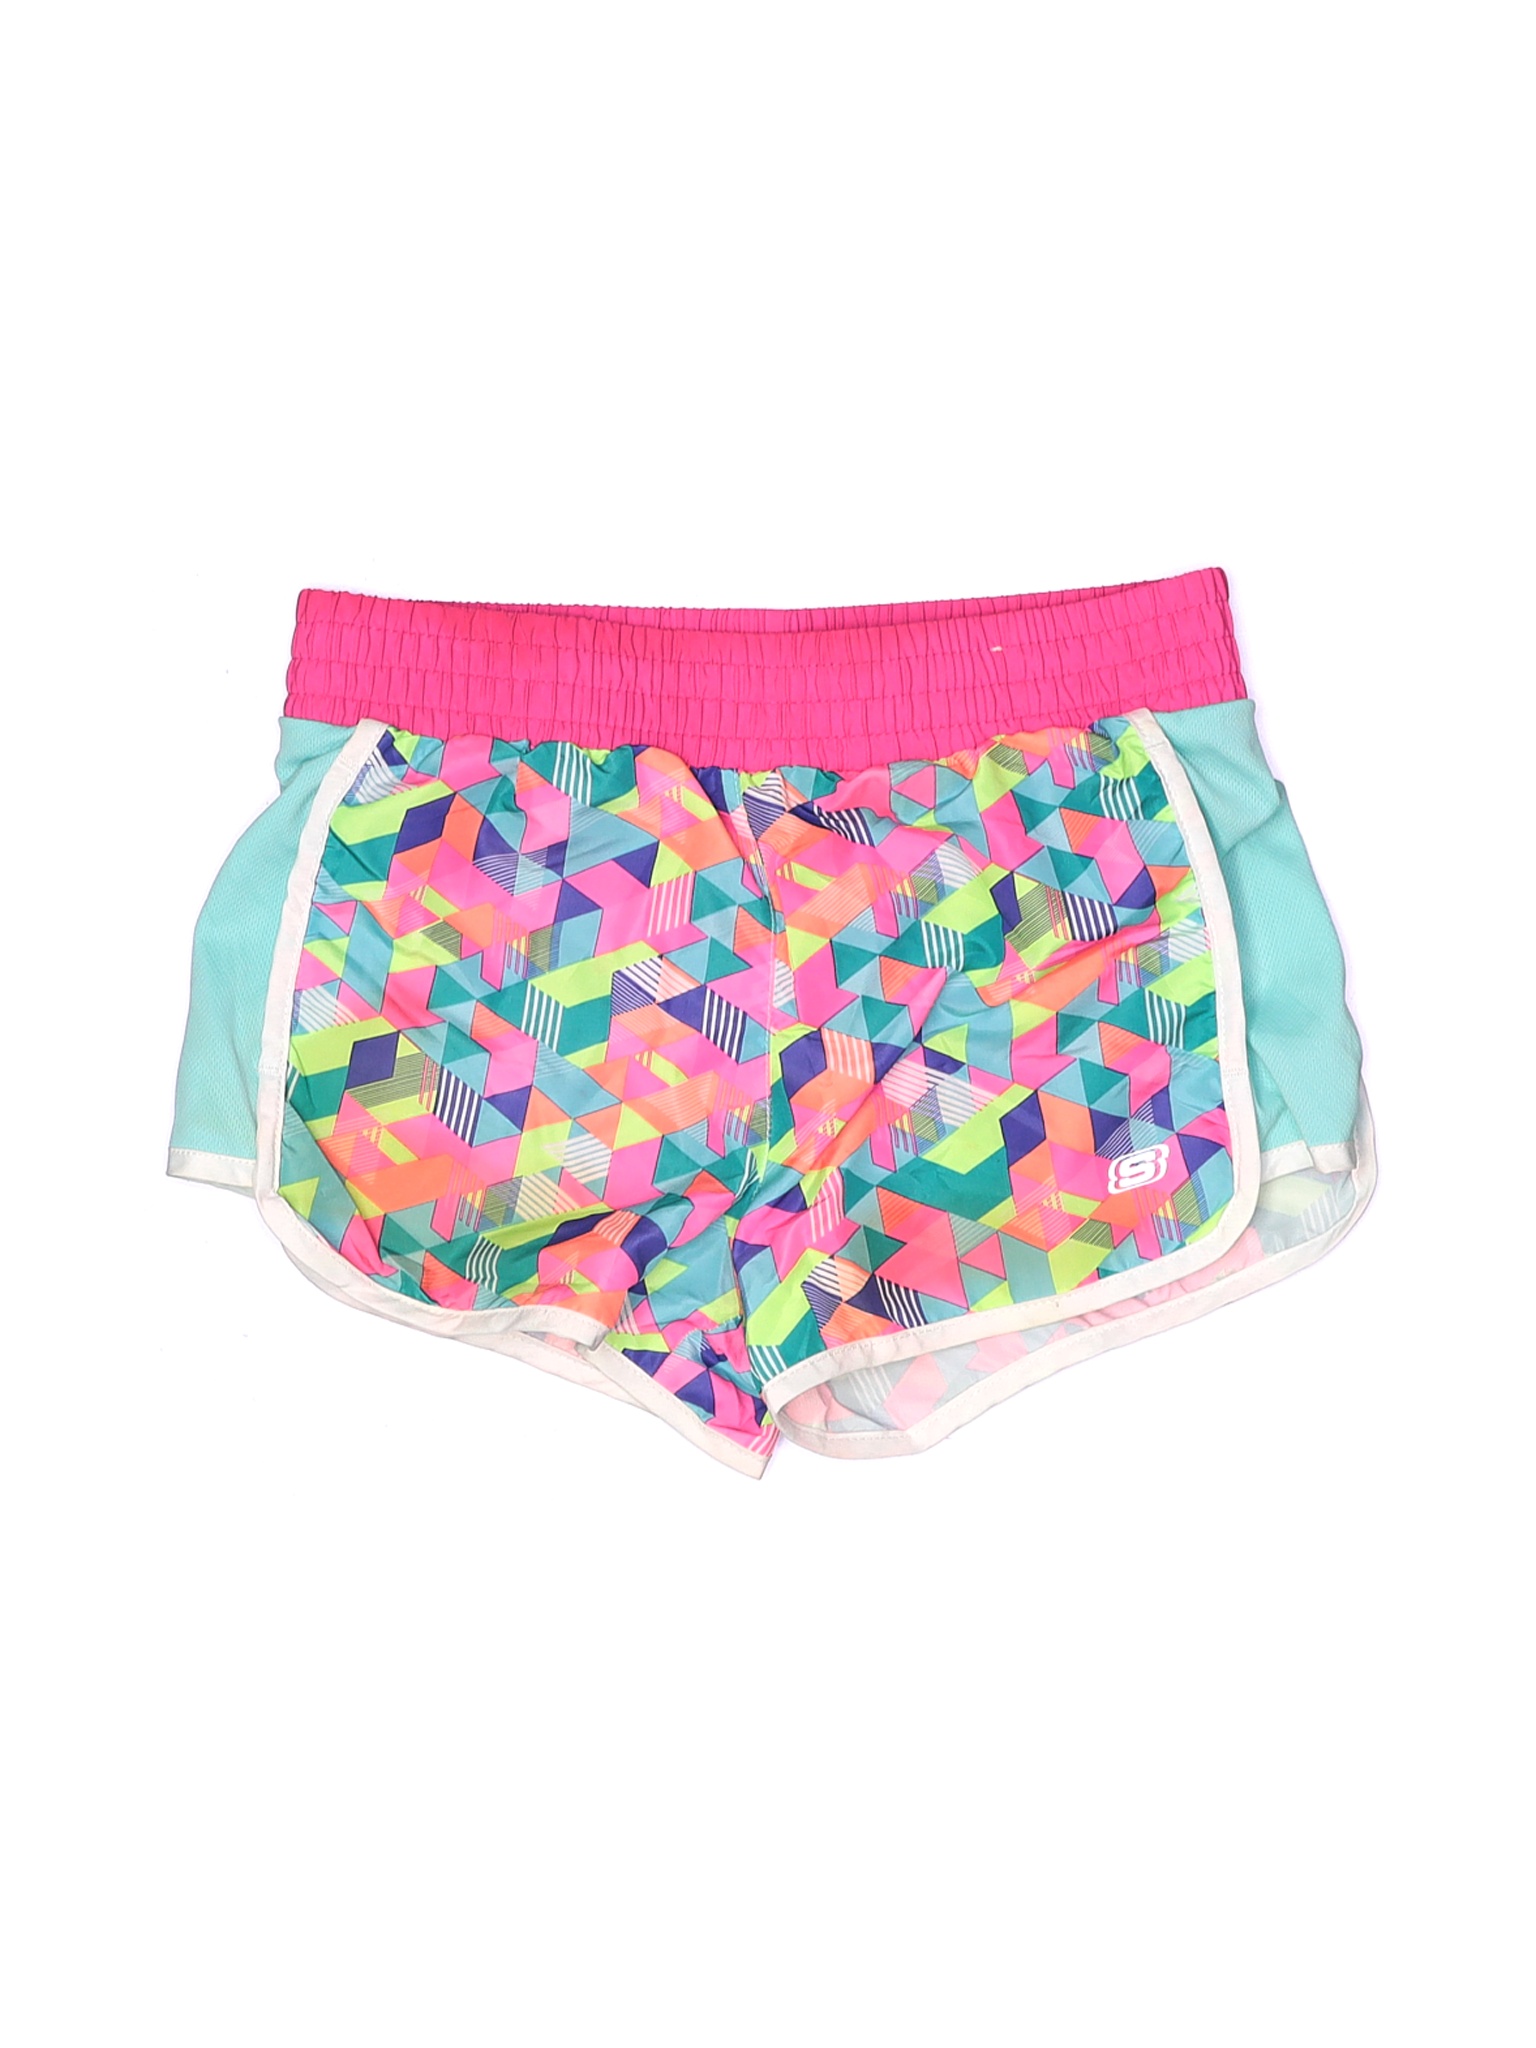 Skechers Girls Pink Athletic Shorts 14 | eBay